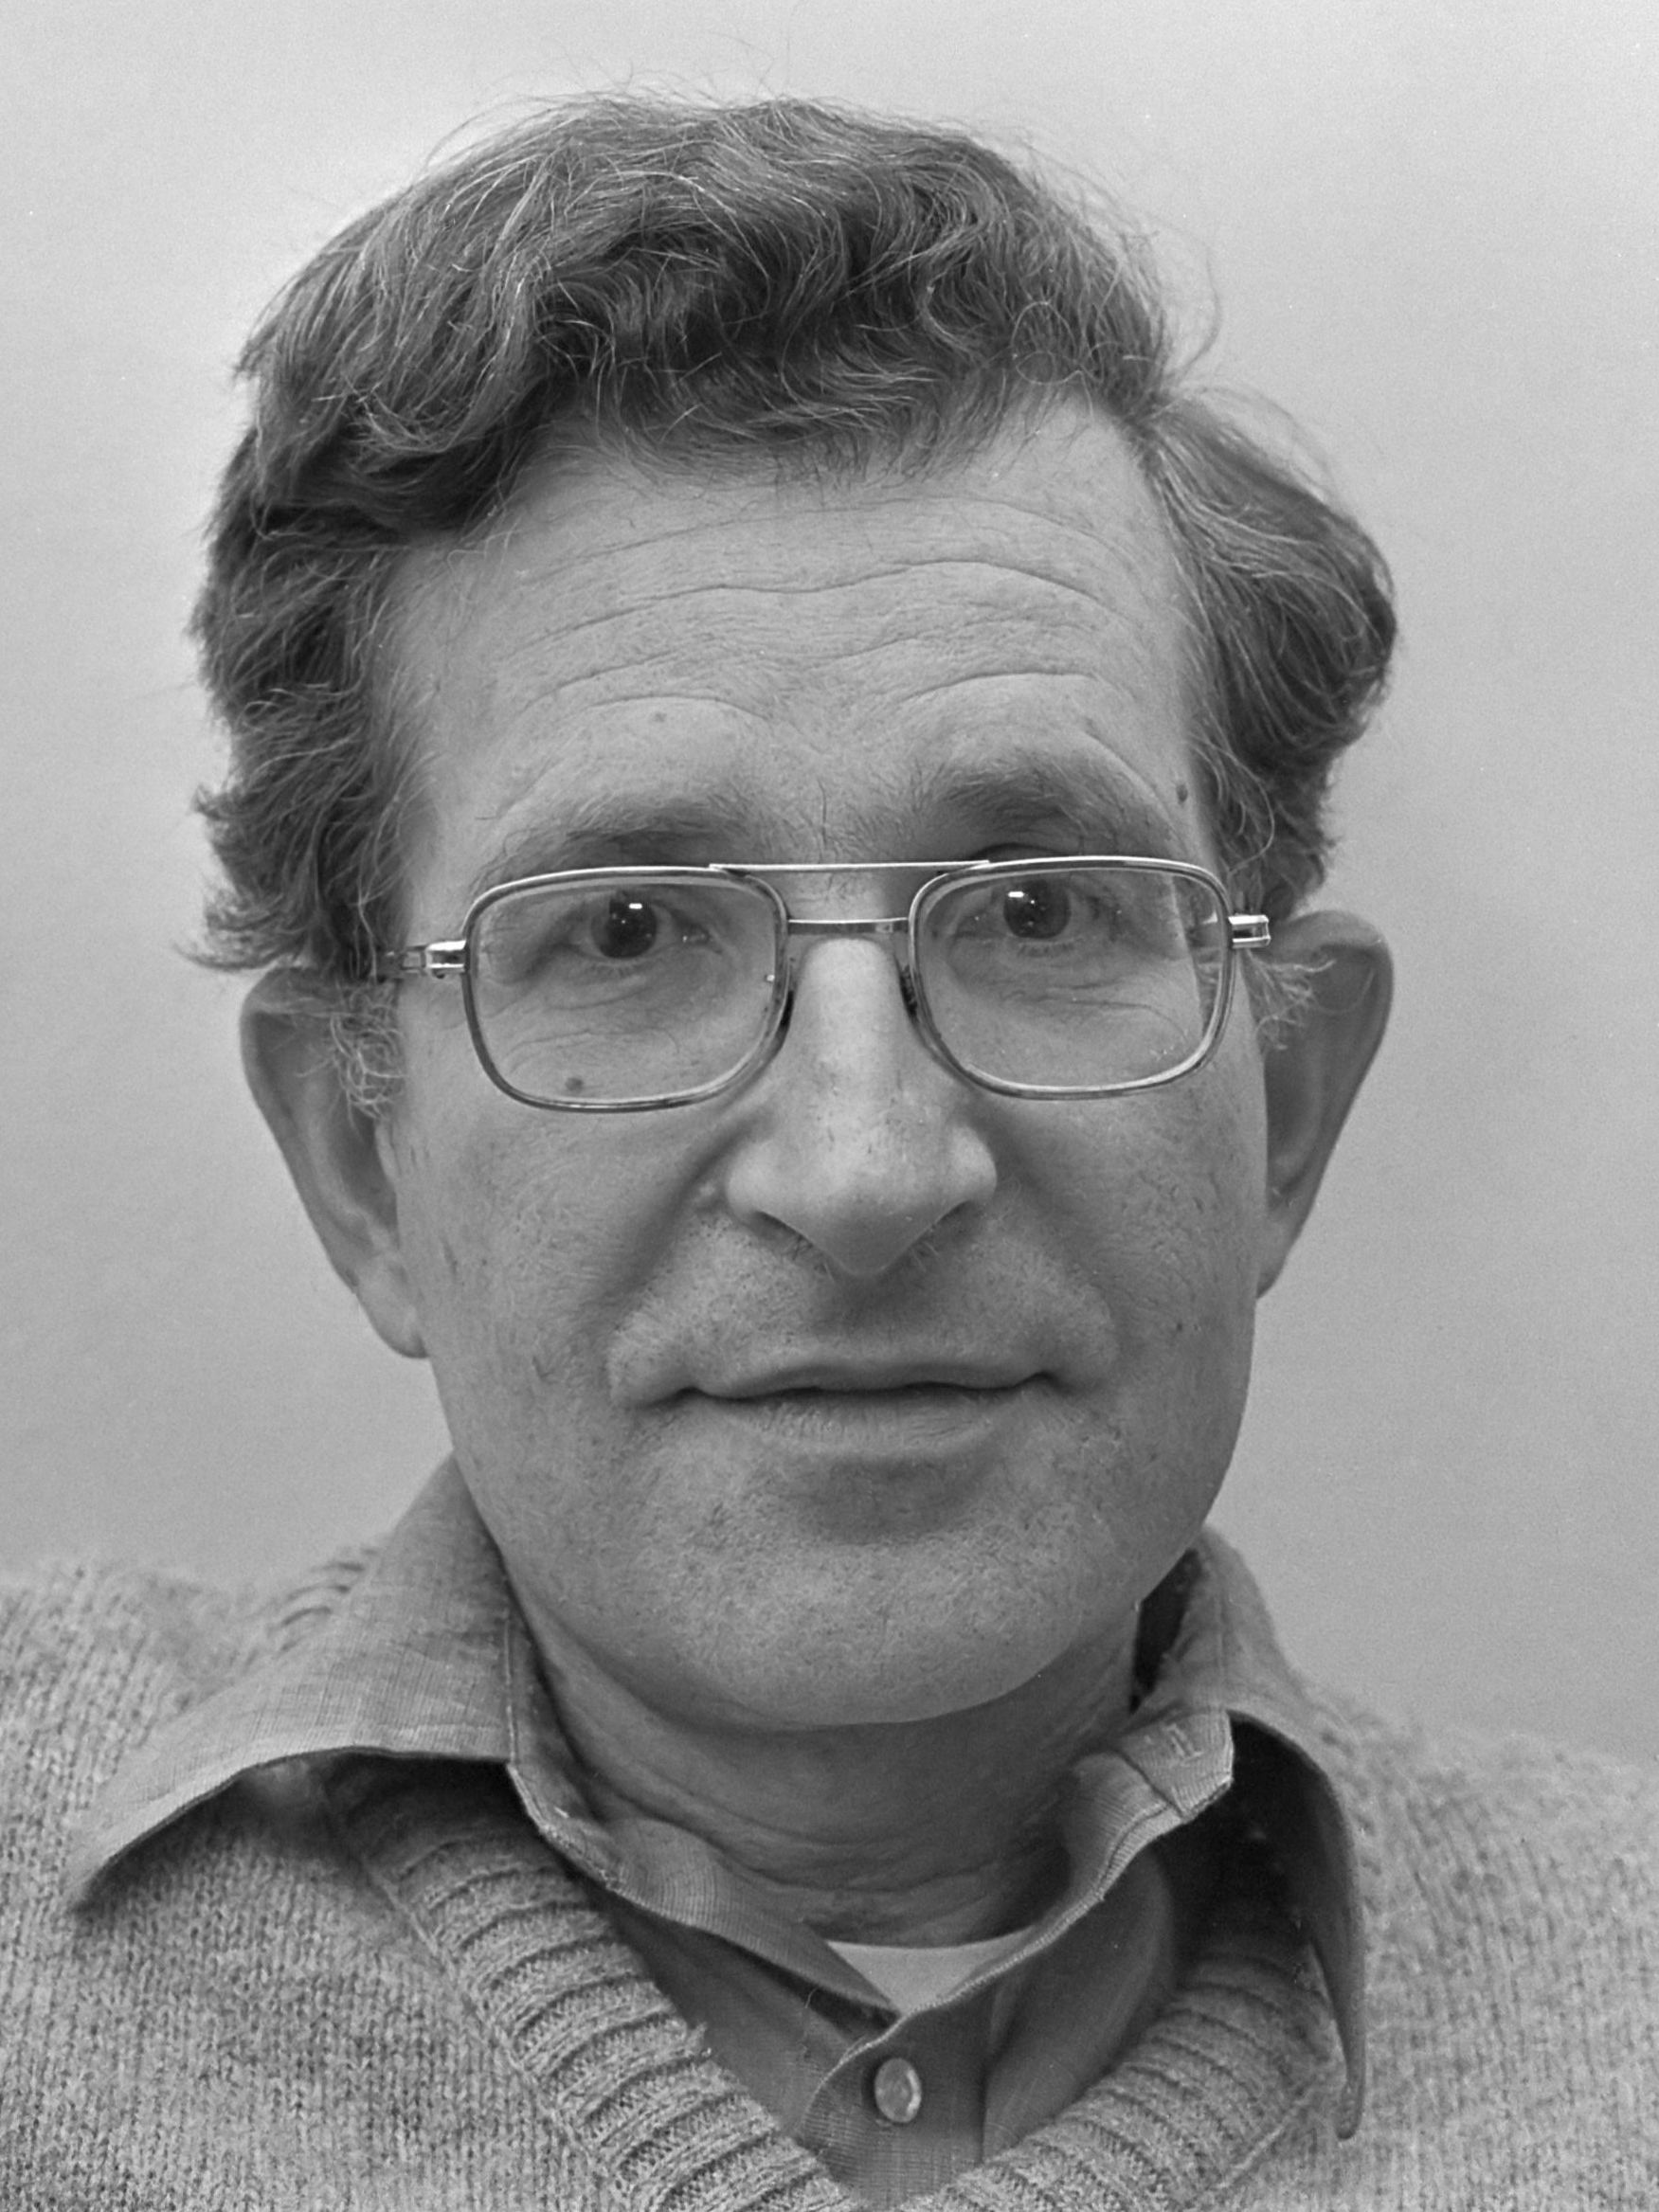 Noam Chomsky | Internet Encyclopedia of Philosophy